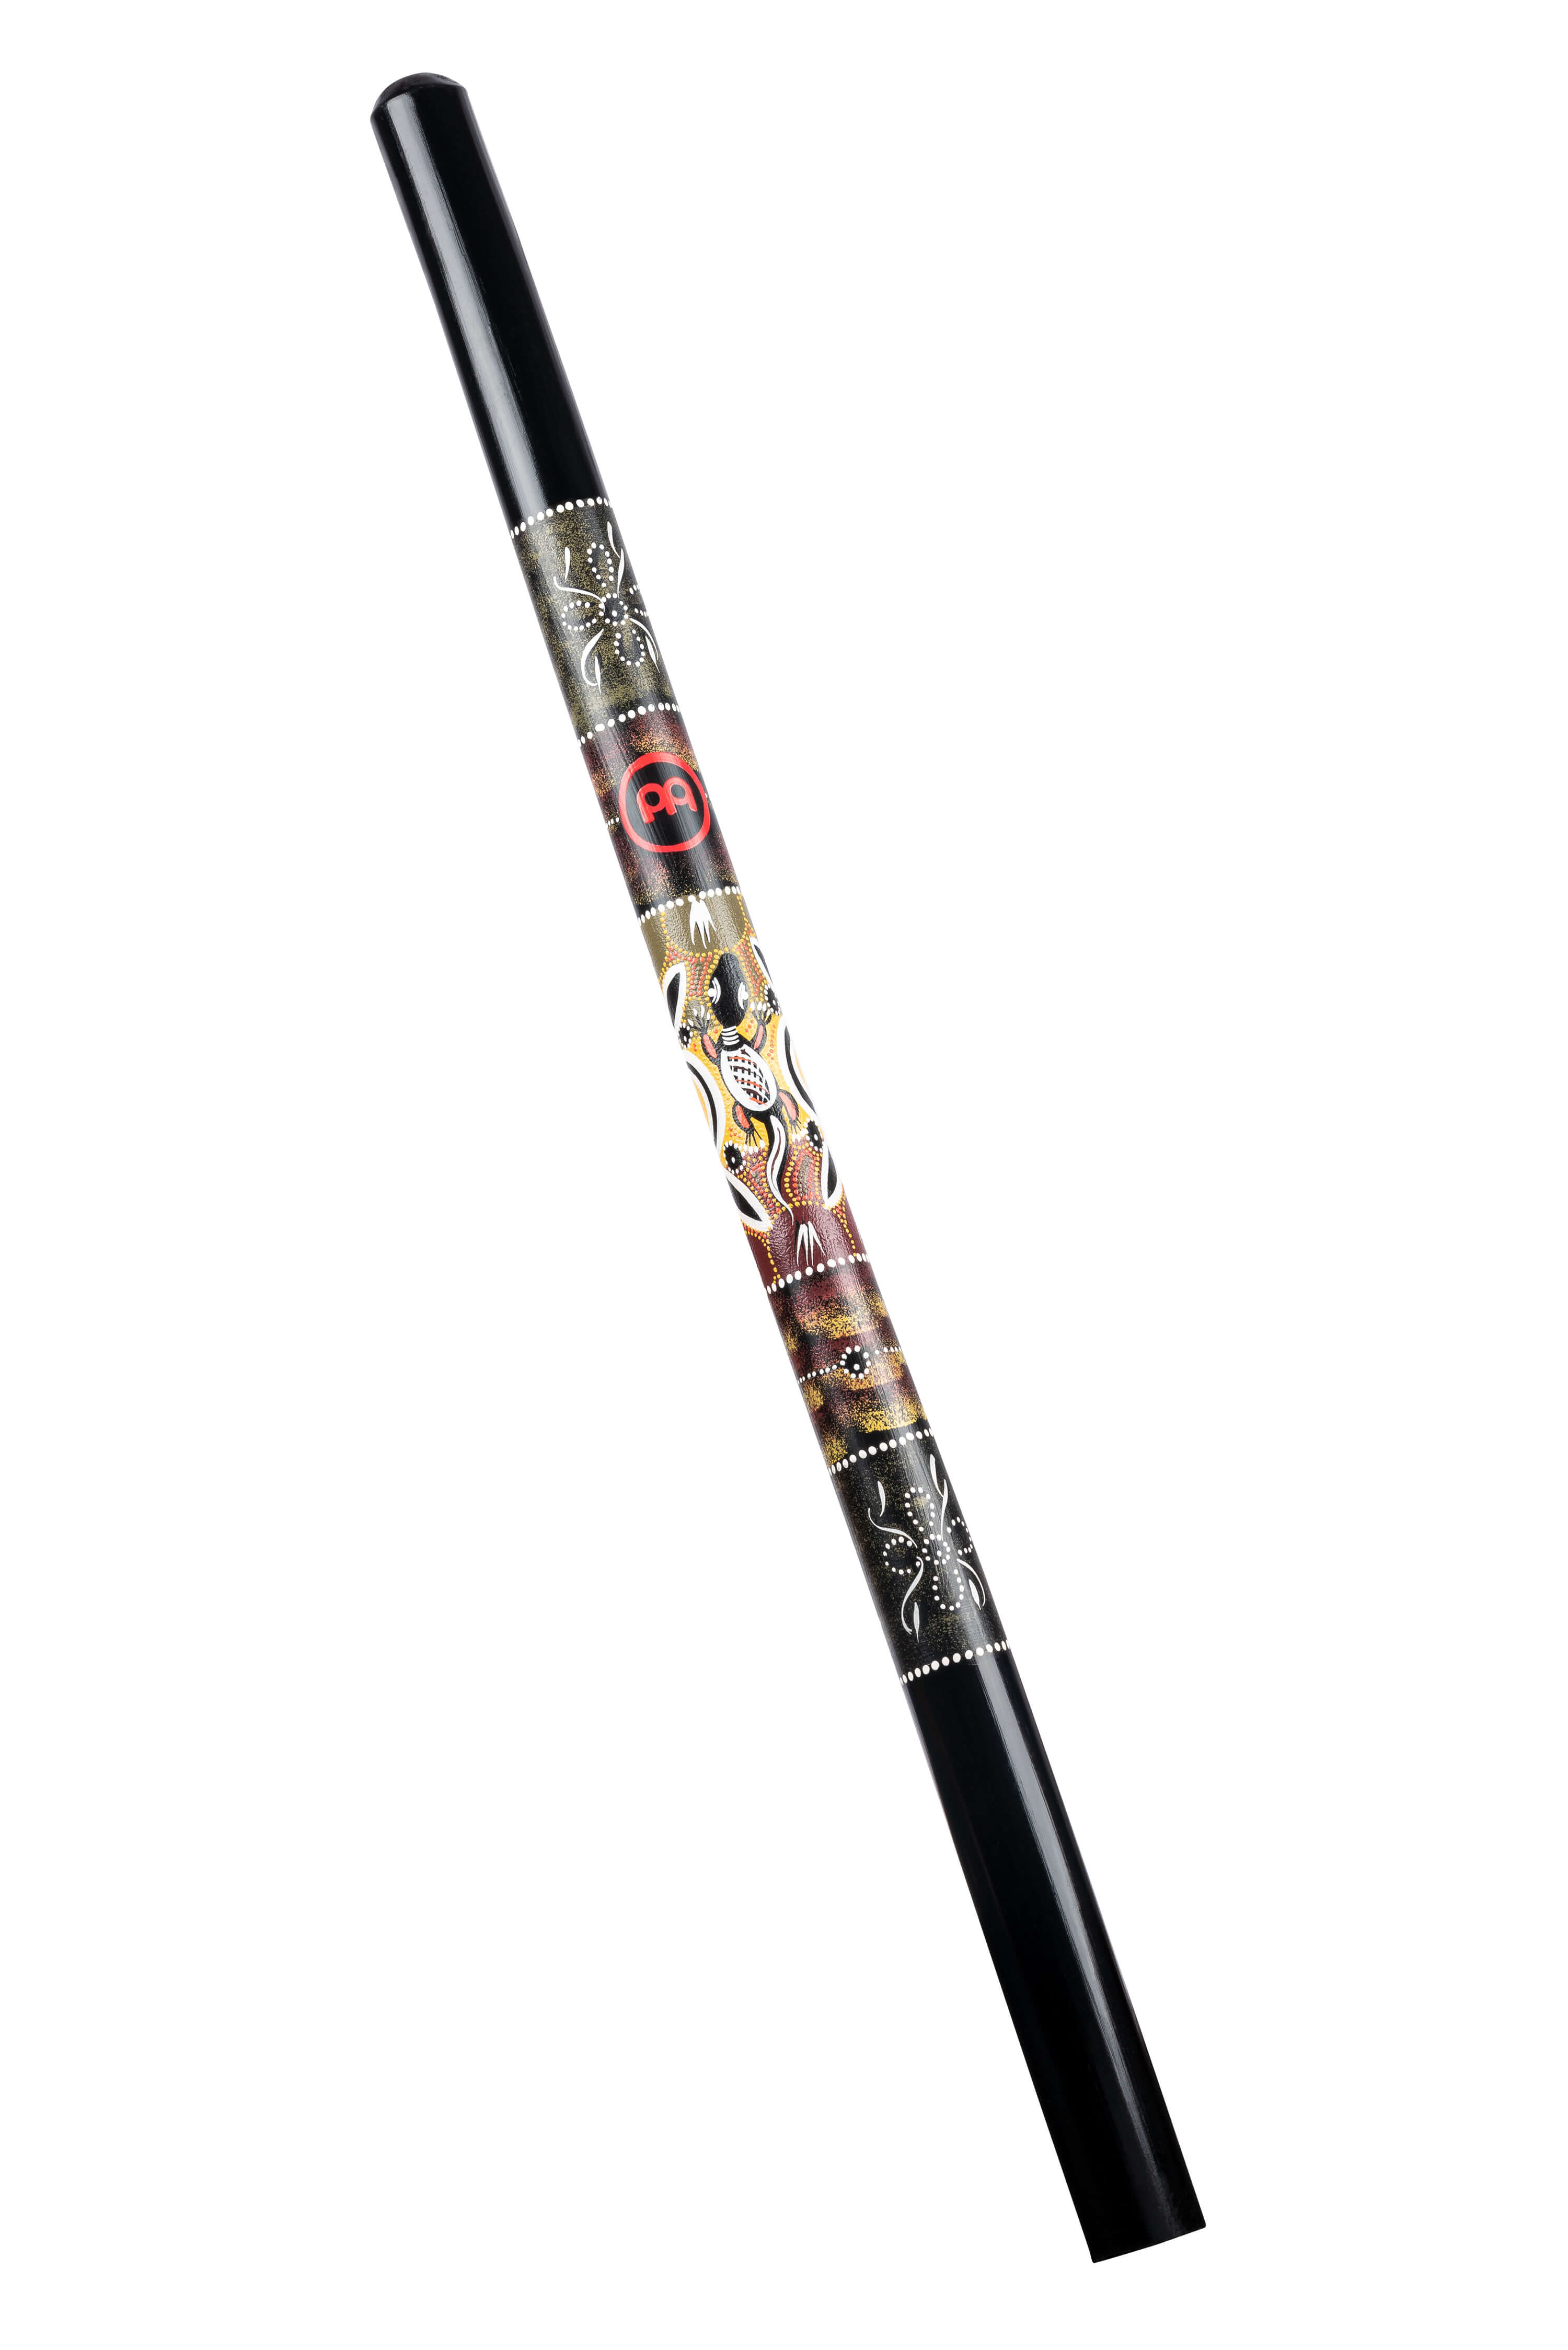 Meinl DDG1-BK Didgeridoo